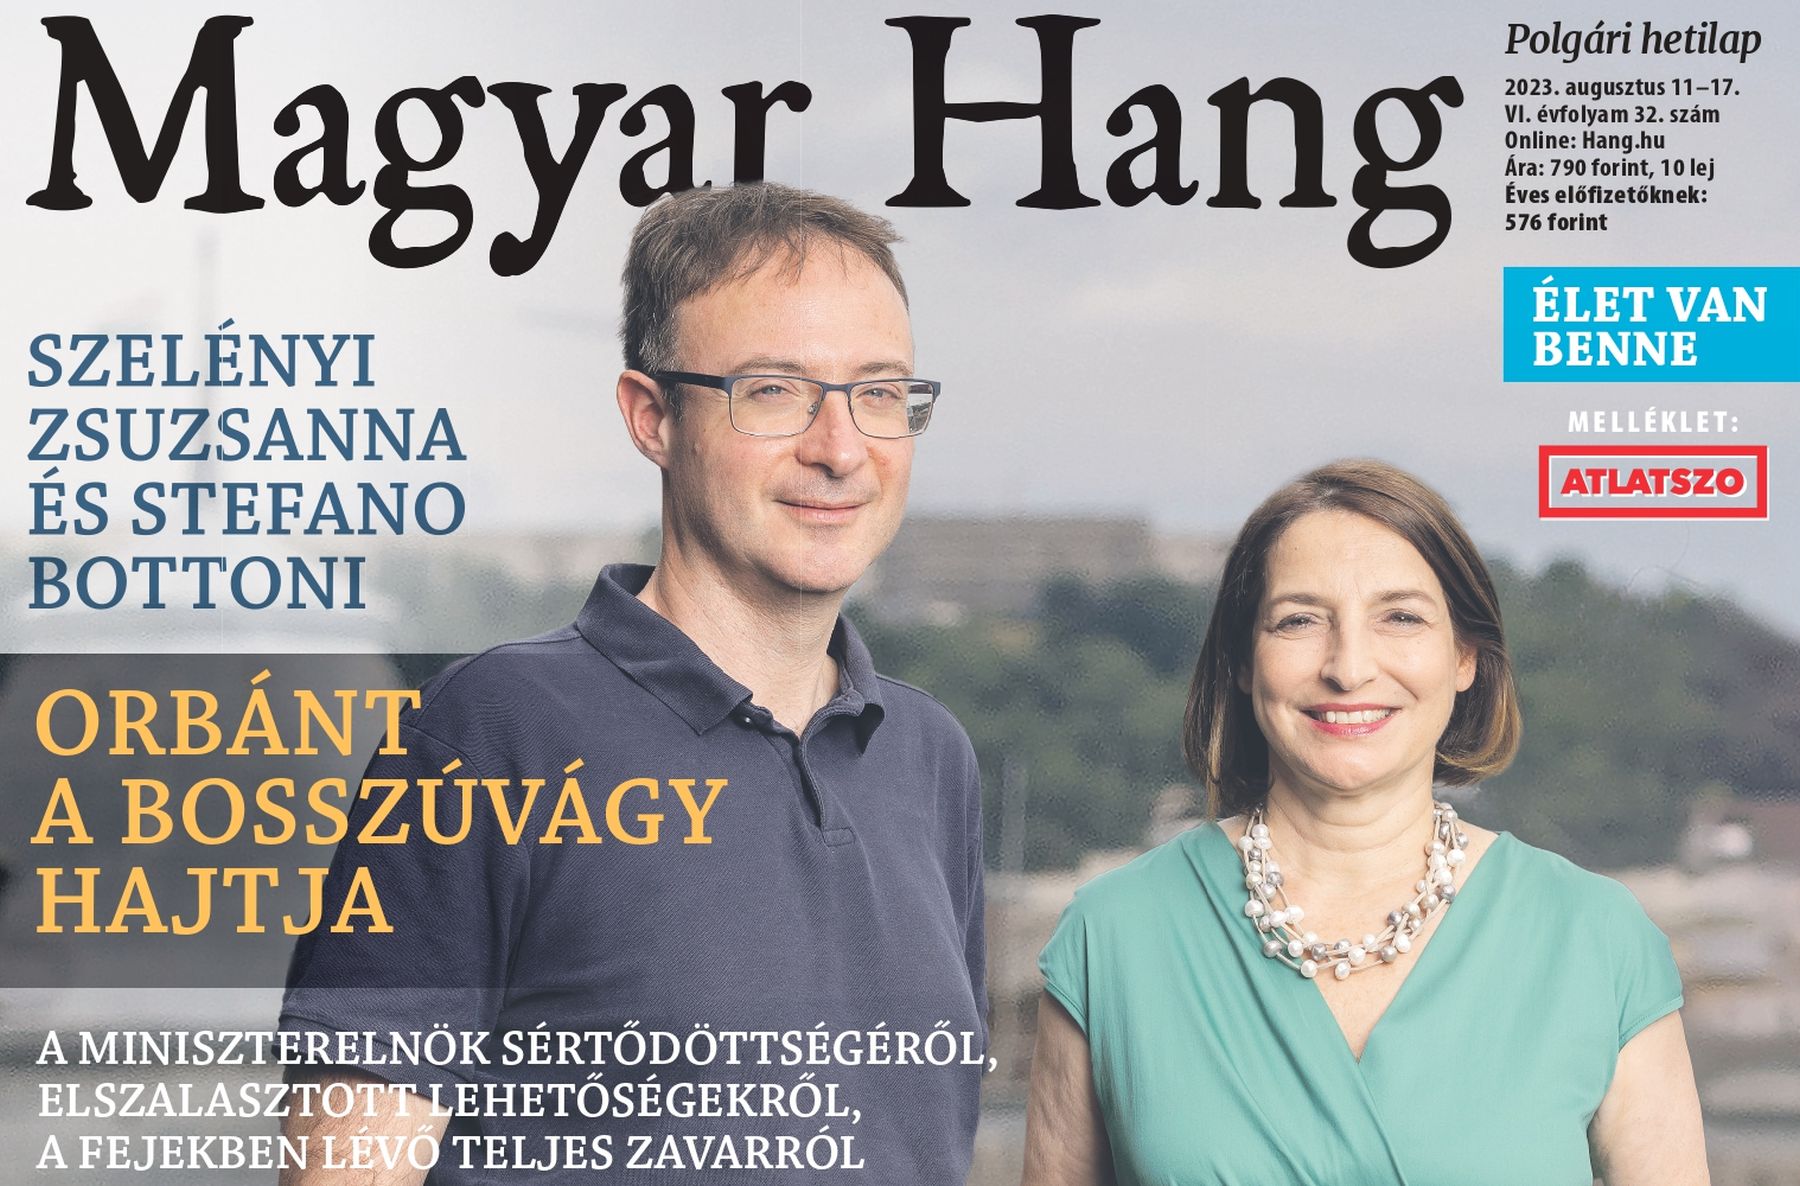 „Orbánt a bosszúvágy hajtja” – Magyar Hang-ajánló